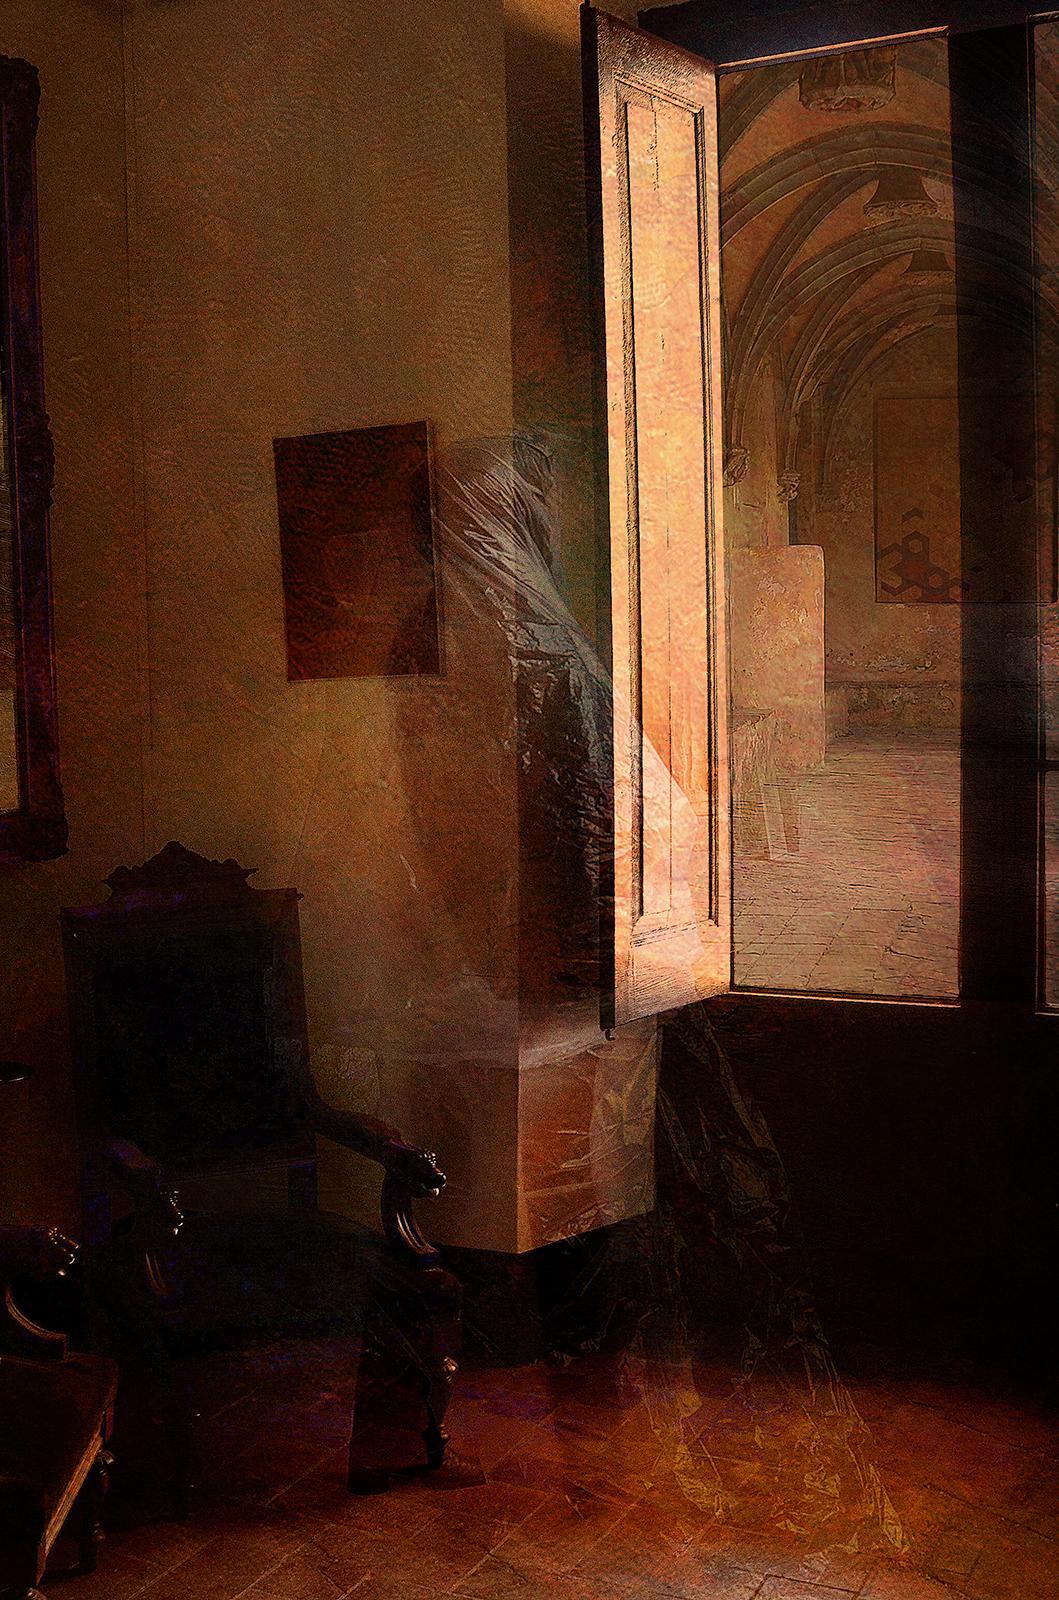 Presence - Signierter Pigmentdruck eines Stilllebens in limitierter Auflage, Contemporary, Square (Abstrakt), Photograph, von Albert Giralt 